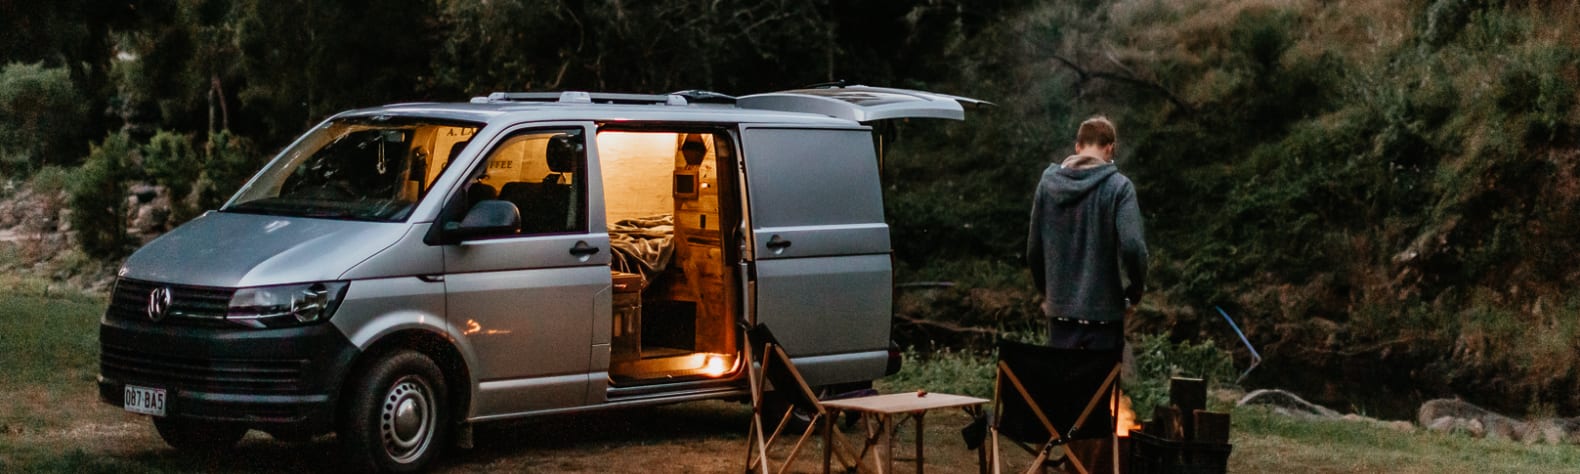 Estate Lodges Caravan & Camping